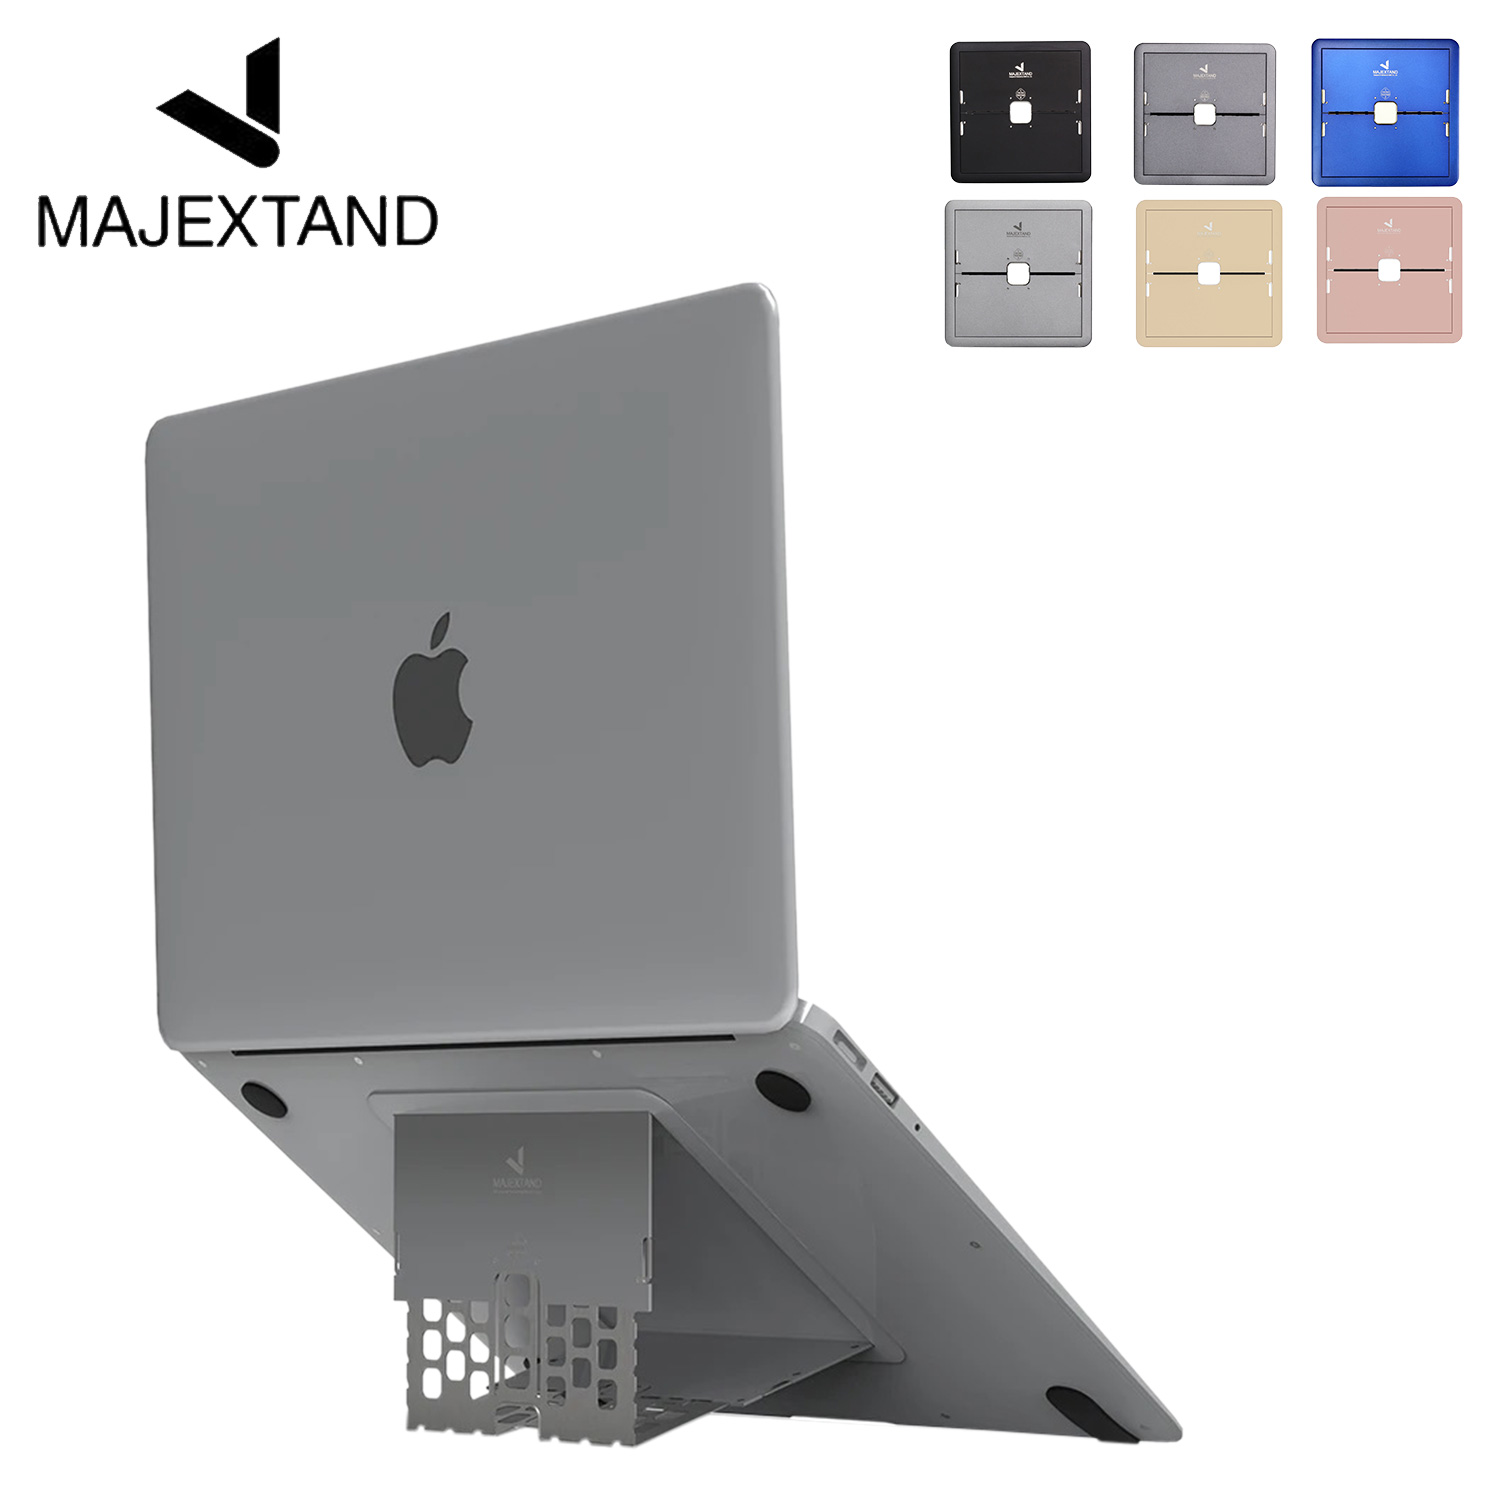  Majextand マジェックスタンド ノートパソコン スタンド PCスタンド 折りたたみ式 18インチ コンパクト MAJEXTAND